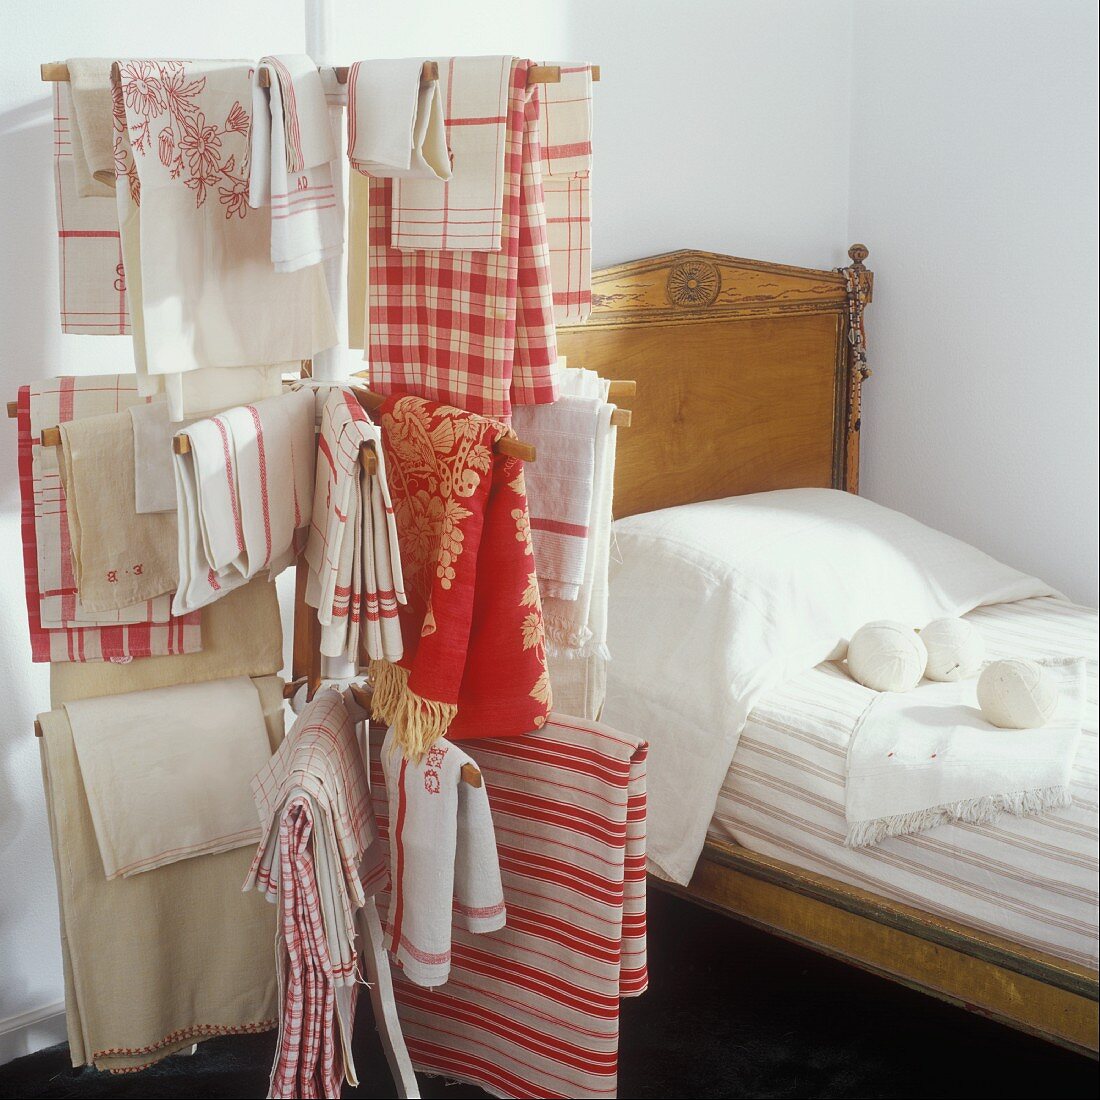 Antikes Bett mit an einem Wäschetrockner hängender Vintage-Wäsche in Rot-Weiß